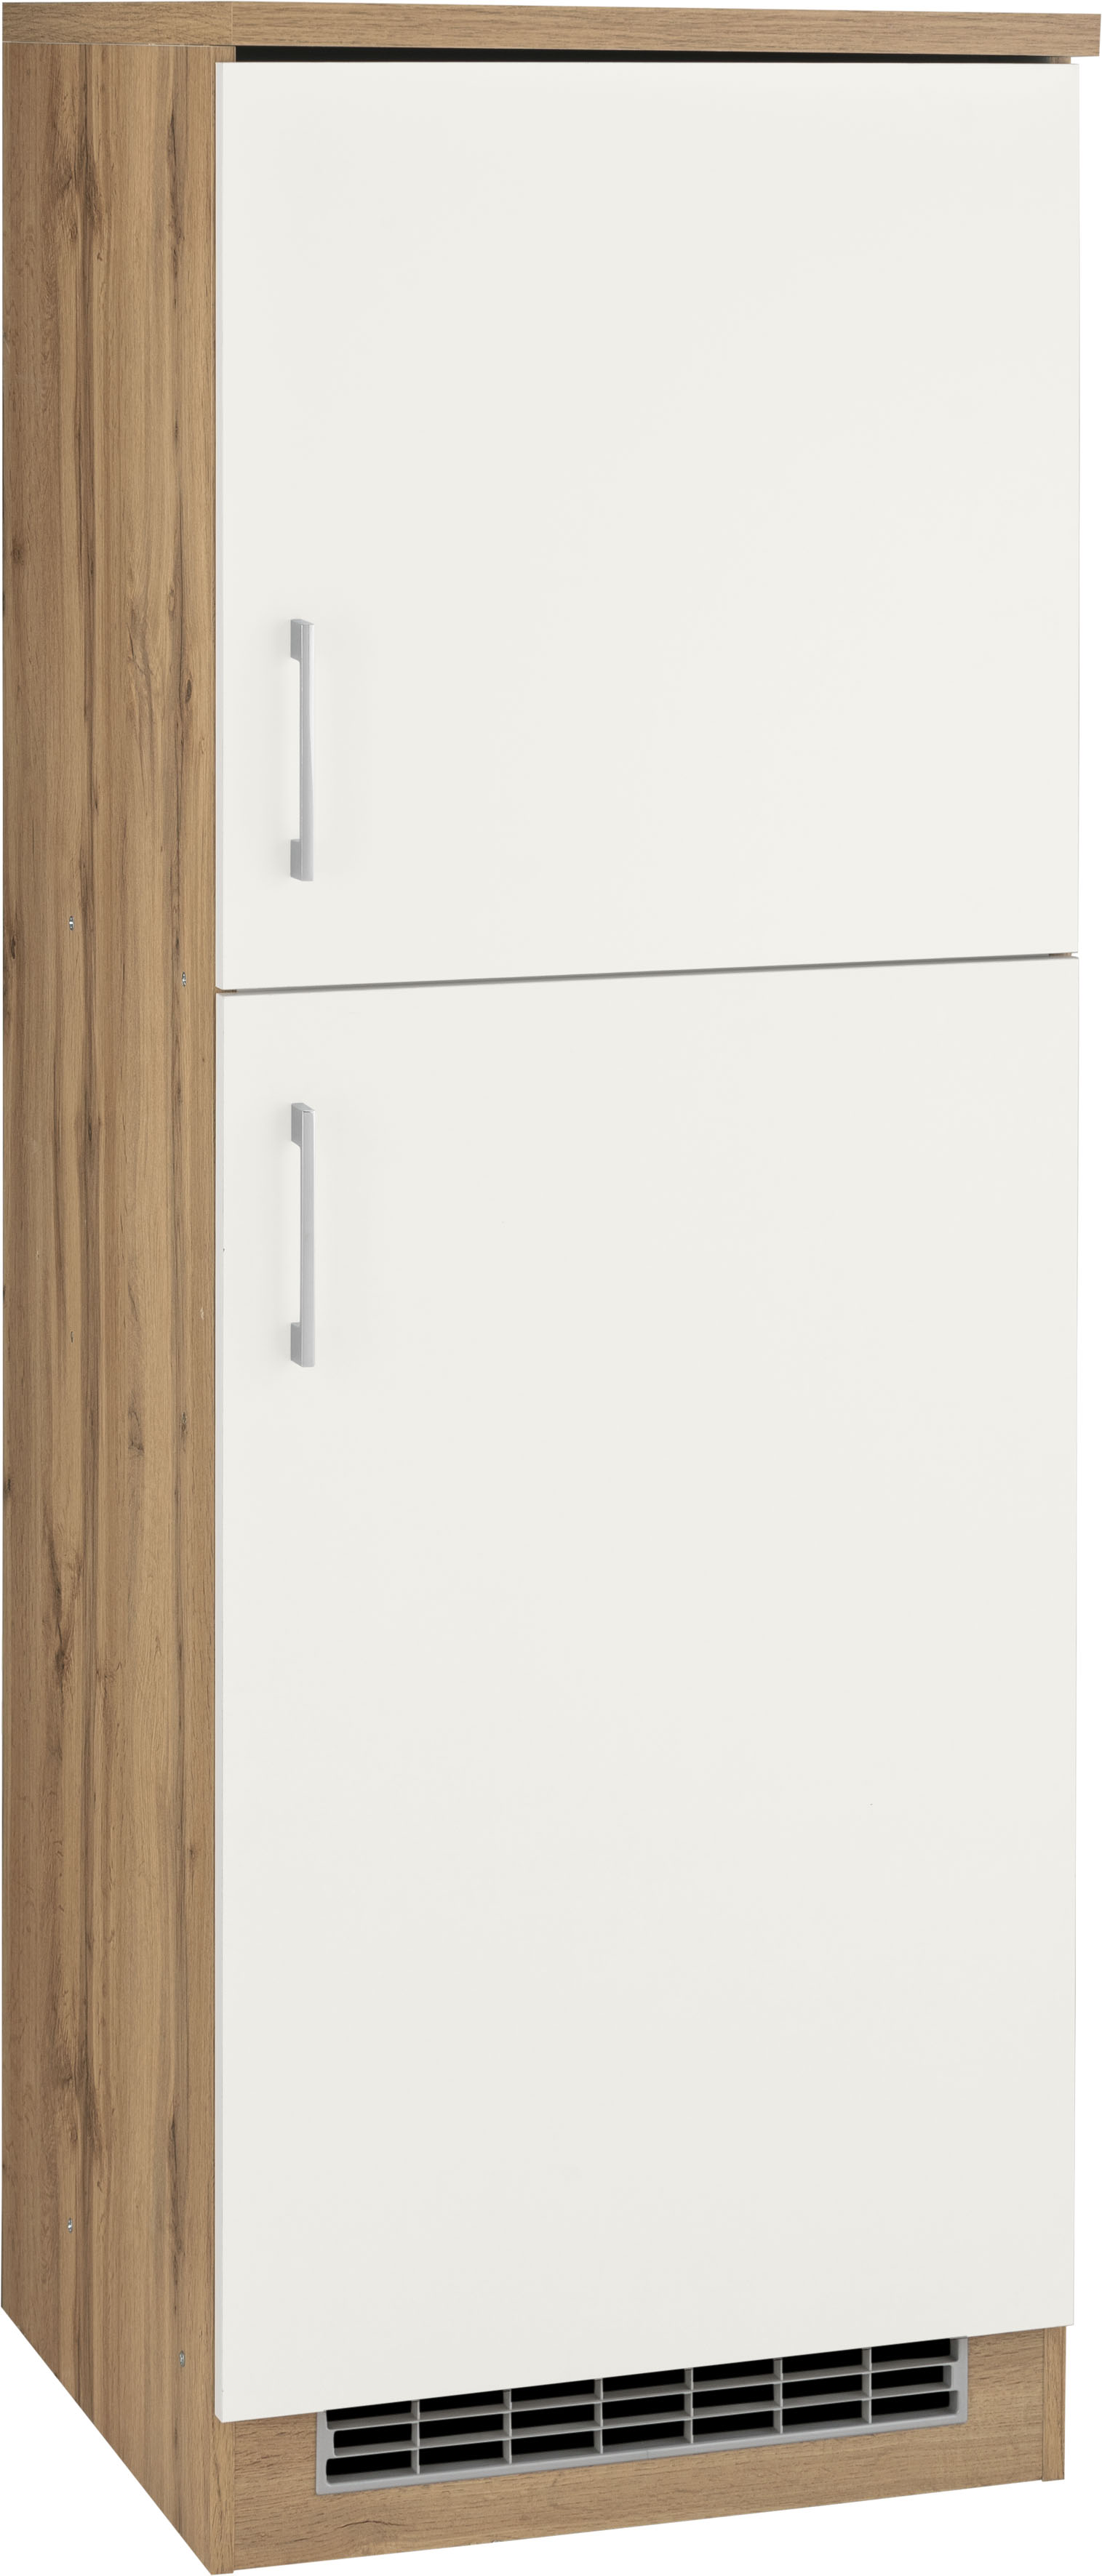 HELD MÖBEL Kühlumbauschrank »Visby«, für großen Kühlschrank oder Kühl/ Gefrierkombi, Nischenmaß 178 cm auf Raten kaufen